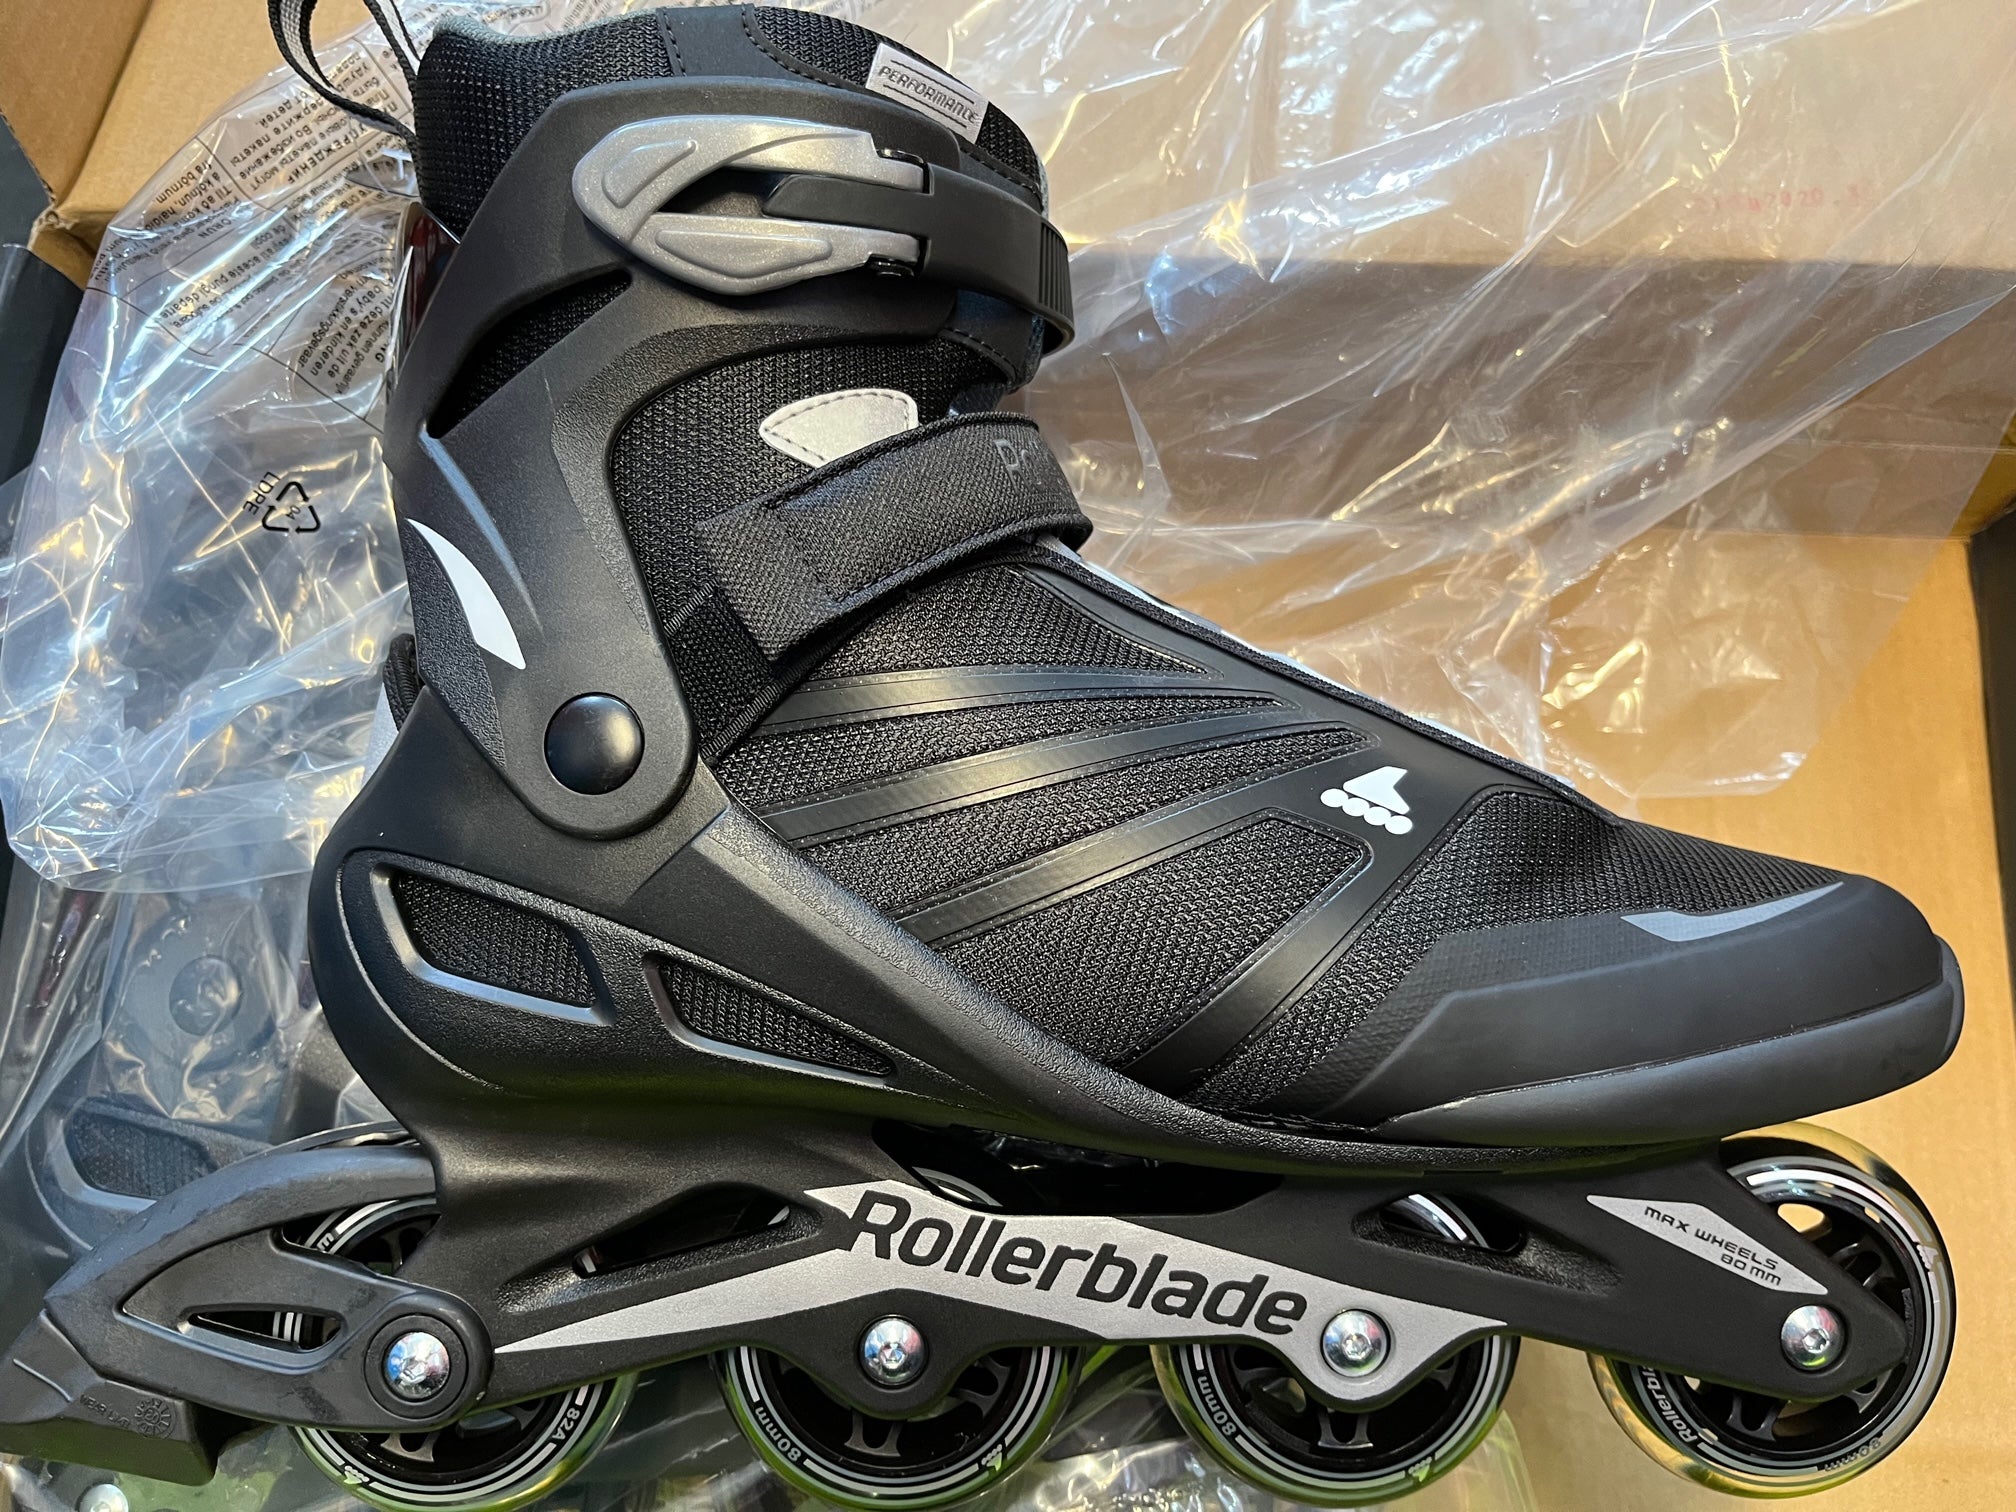 Rollerblade Sirio 84 Inliner Inlineskates Skates Herren 